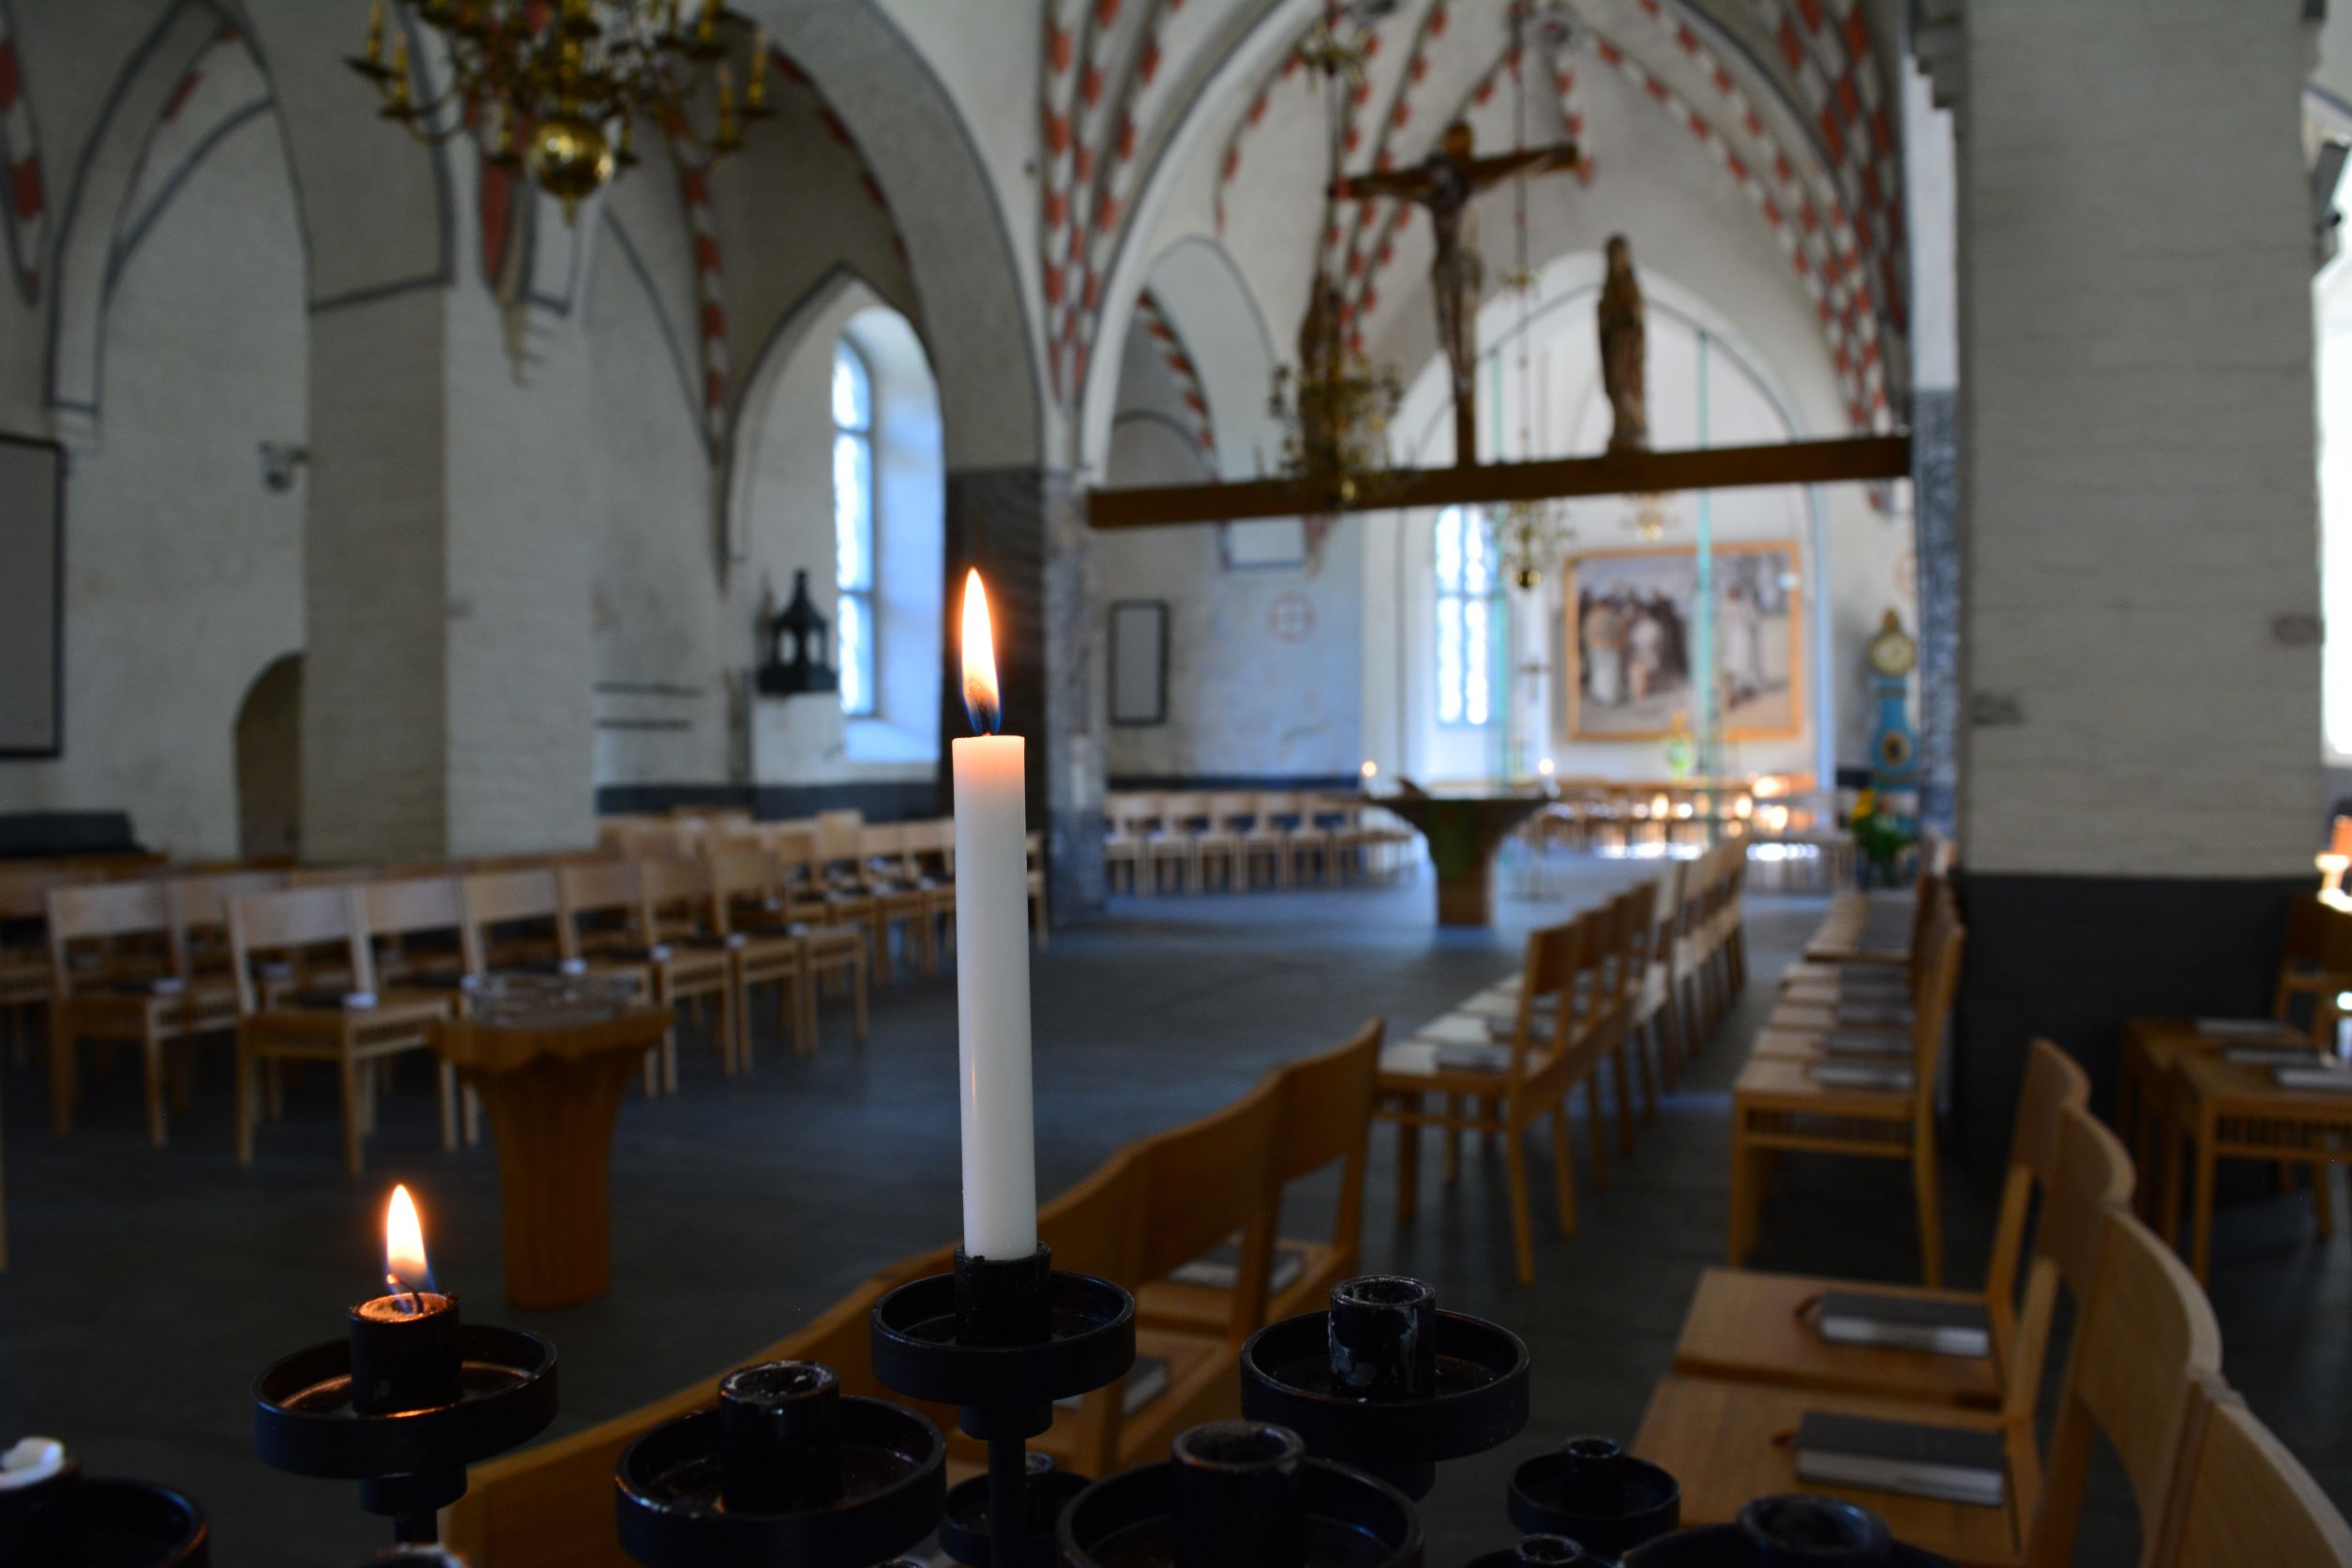 Mustassa ja rautaisessa kynttelikössä palaa kaksi pientä kynttilää hämärässä kirkkosalissa. Taustalla näkyvä muu sali on sumea, ja kuva on kohdistettu kynttilöihin.